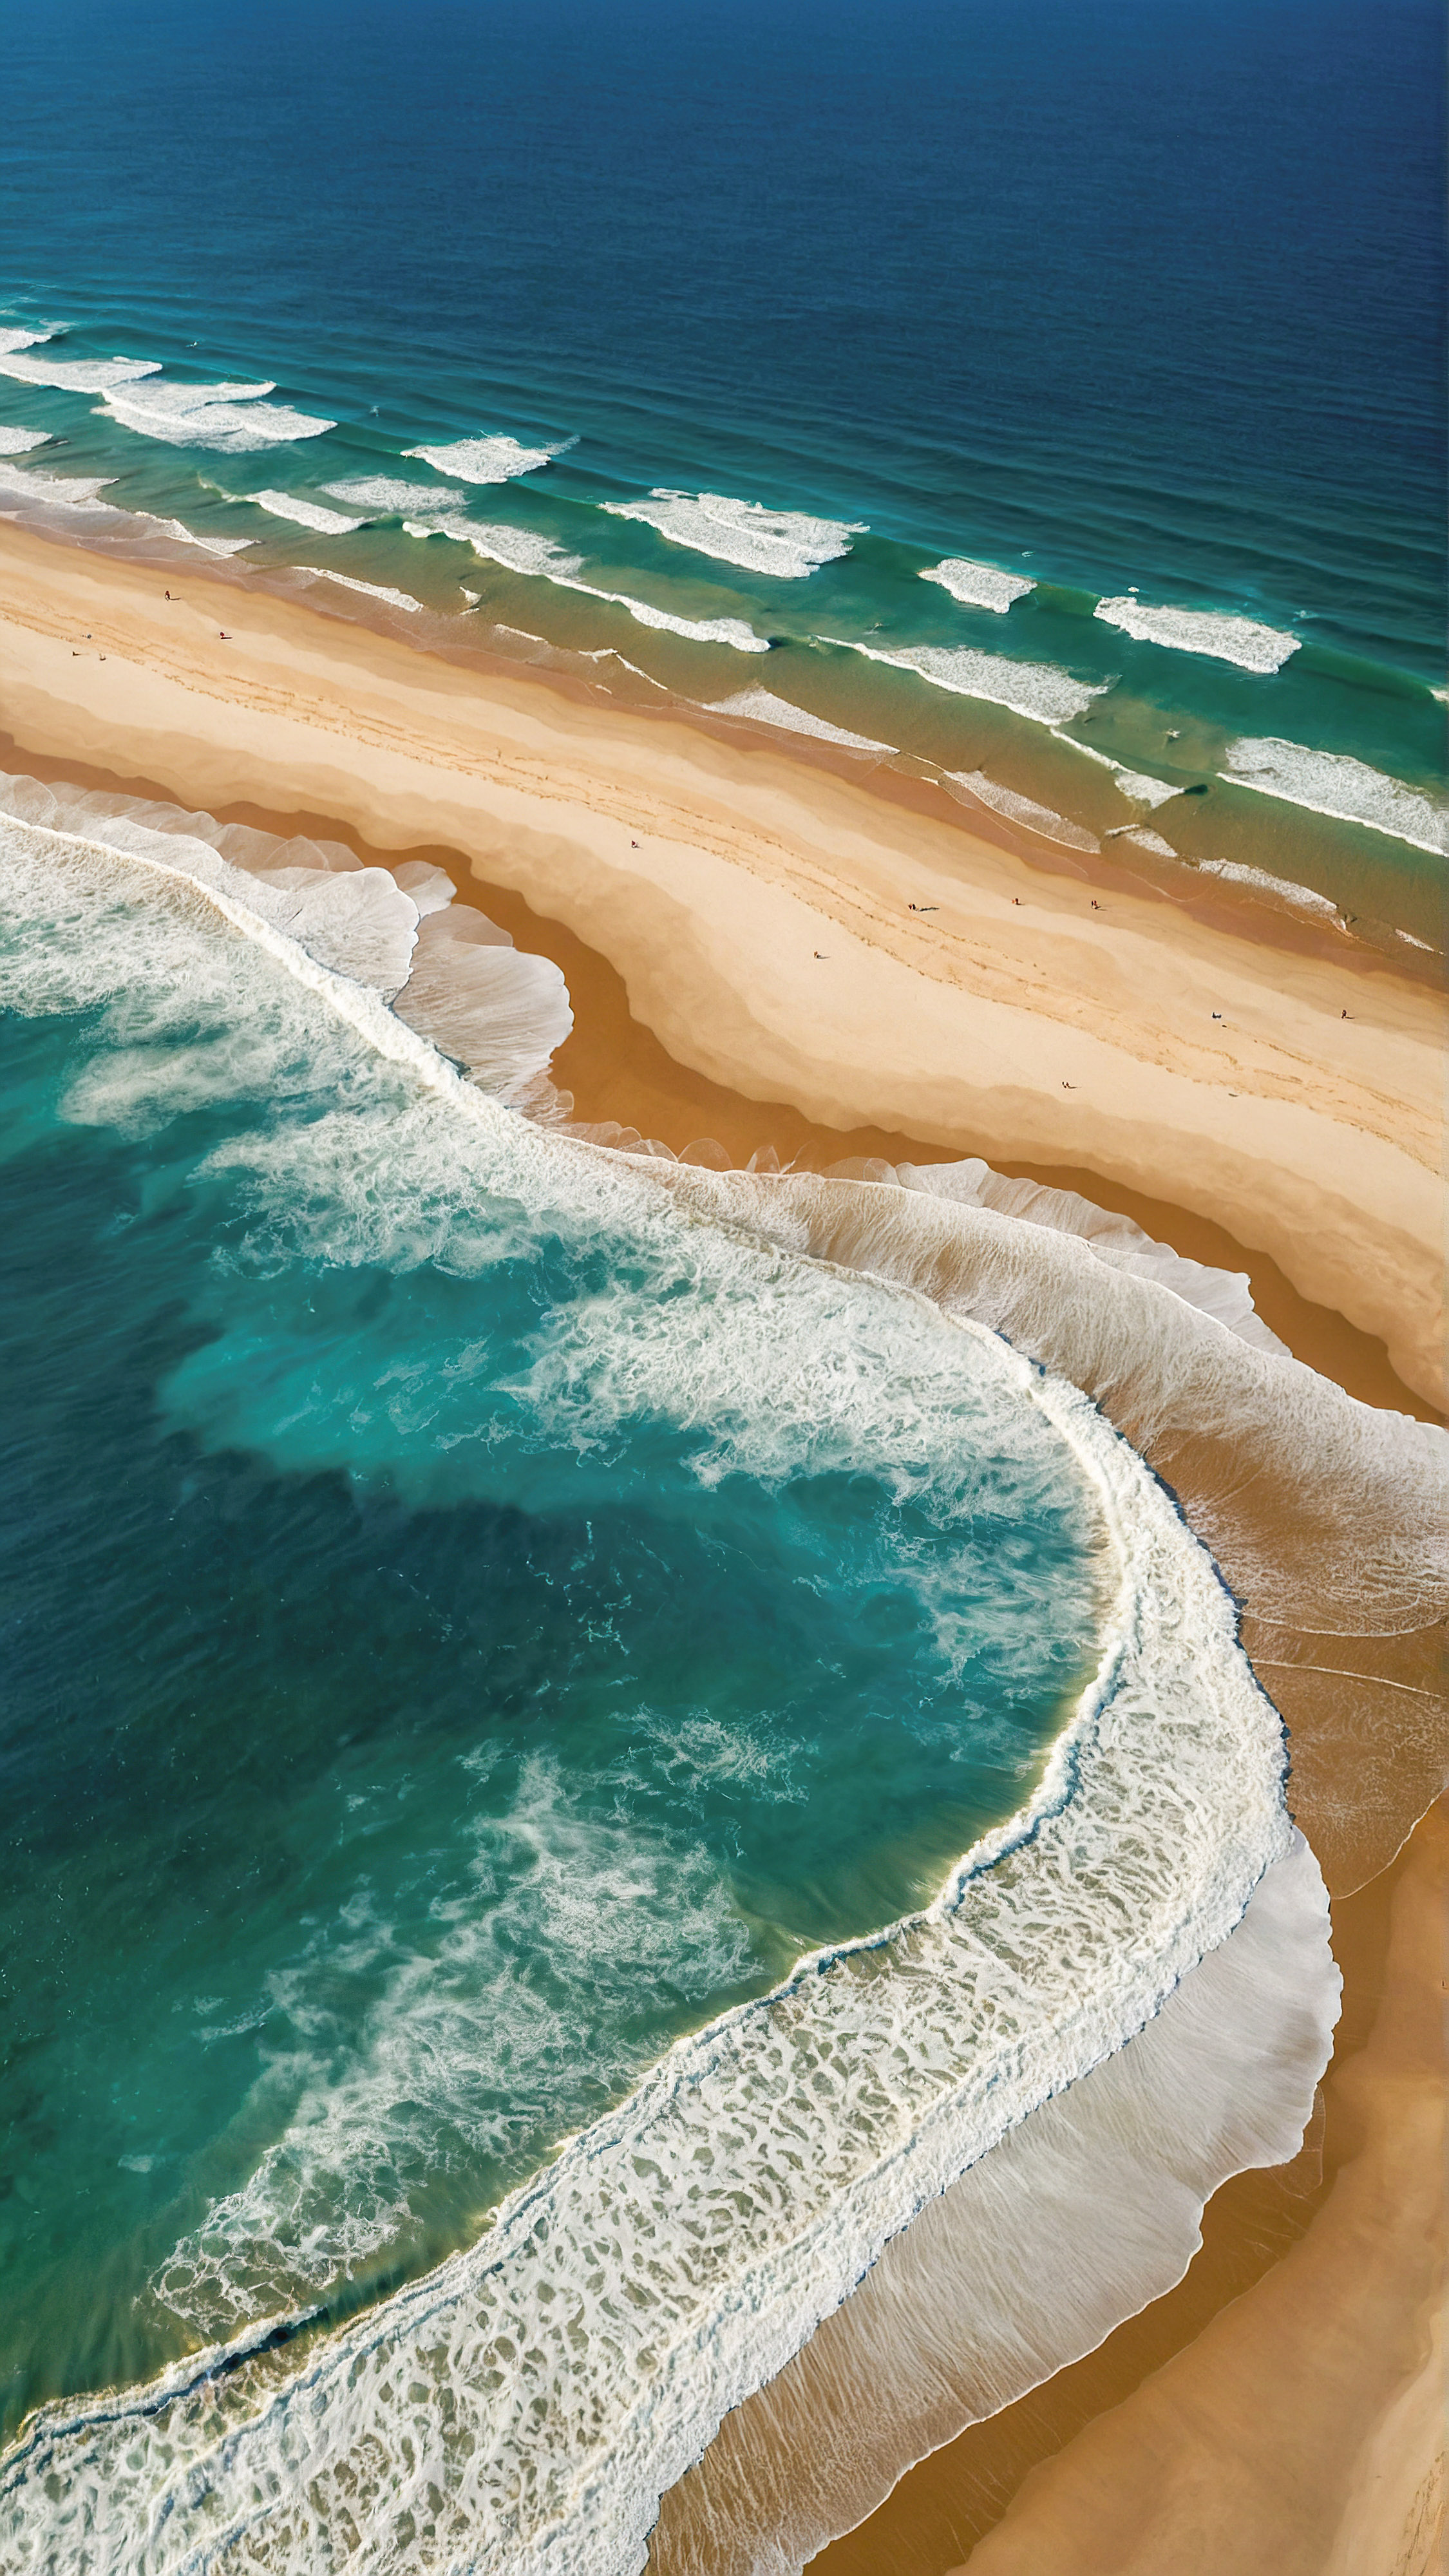 Vivez la vue aérienne époustouflante de notre fond d'écran 4K Ultra HD pour iPhone, présentant une plage avec un océan bleu profond, ses nuances plus claires indiquant le mouvement des vagues blanches et mousseuses rencontrant le rivage sablonneux de couleur claire.